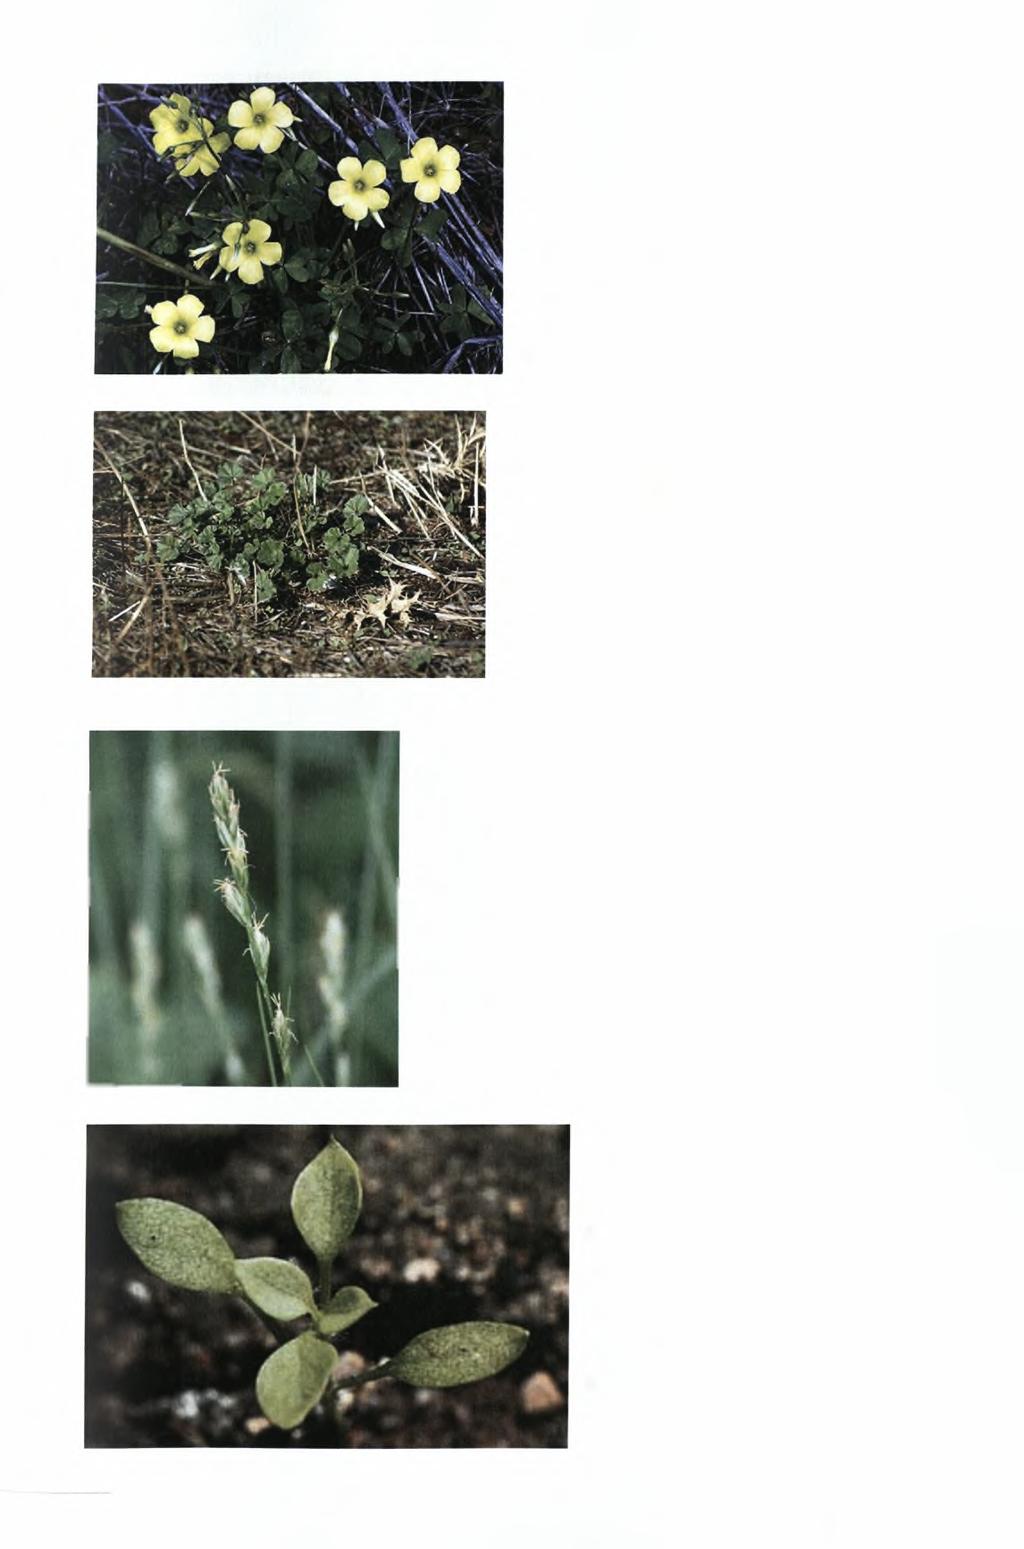 Επιστημονικό όνομα: Oxalis pes-caprae Κοινό όνομα: Οξαλίδα Κοινό όνομα - κυπριακή διάλεκτος: Ξυνίδι Περιγραφή: Άνθη - Φύλλα Πηγή